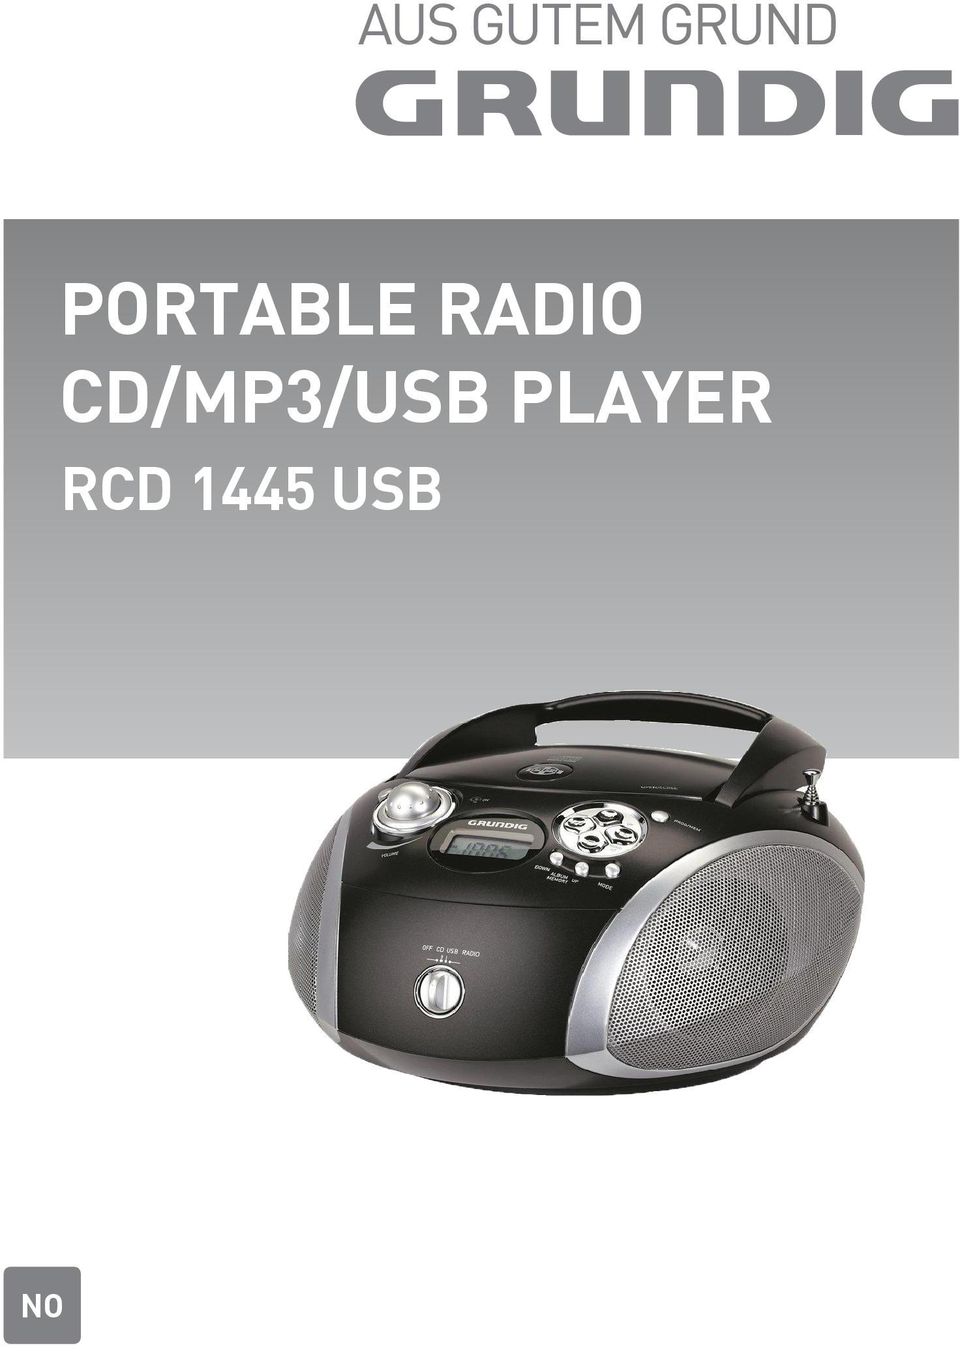 CD/MP3/USB